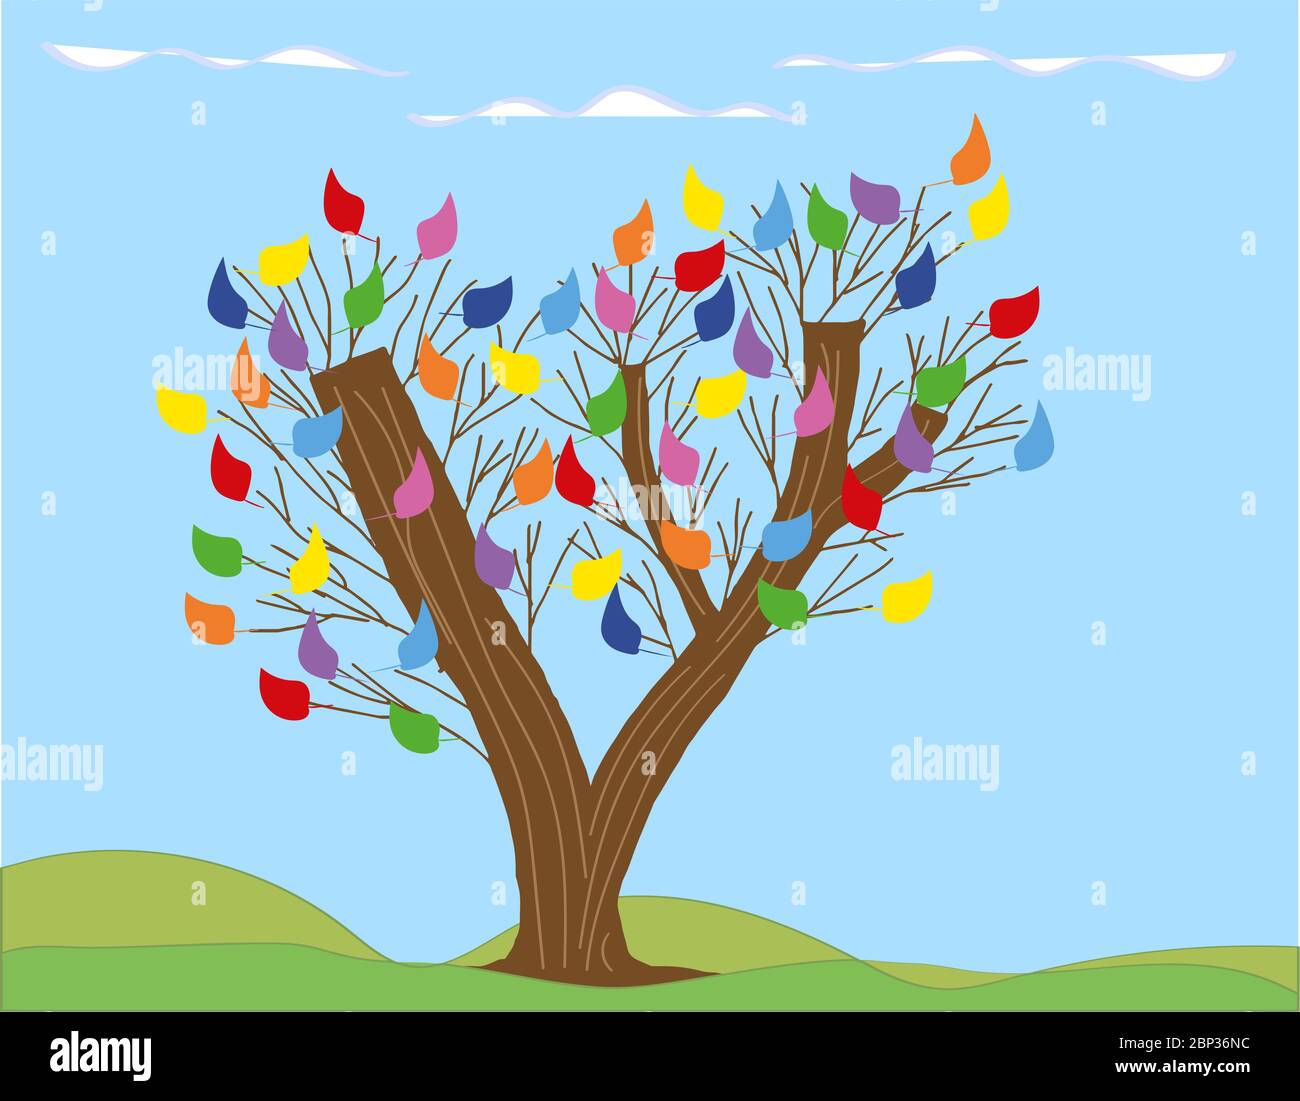 insolito albero dipinto con tre tronchi e foglie colorate su uno sfondo chiaro. imitazione del disegno dei bambini Illustrazione Vettoriale